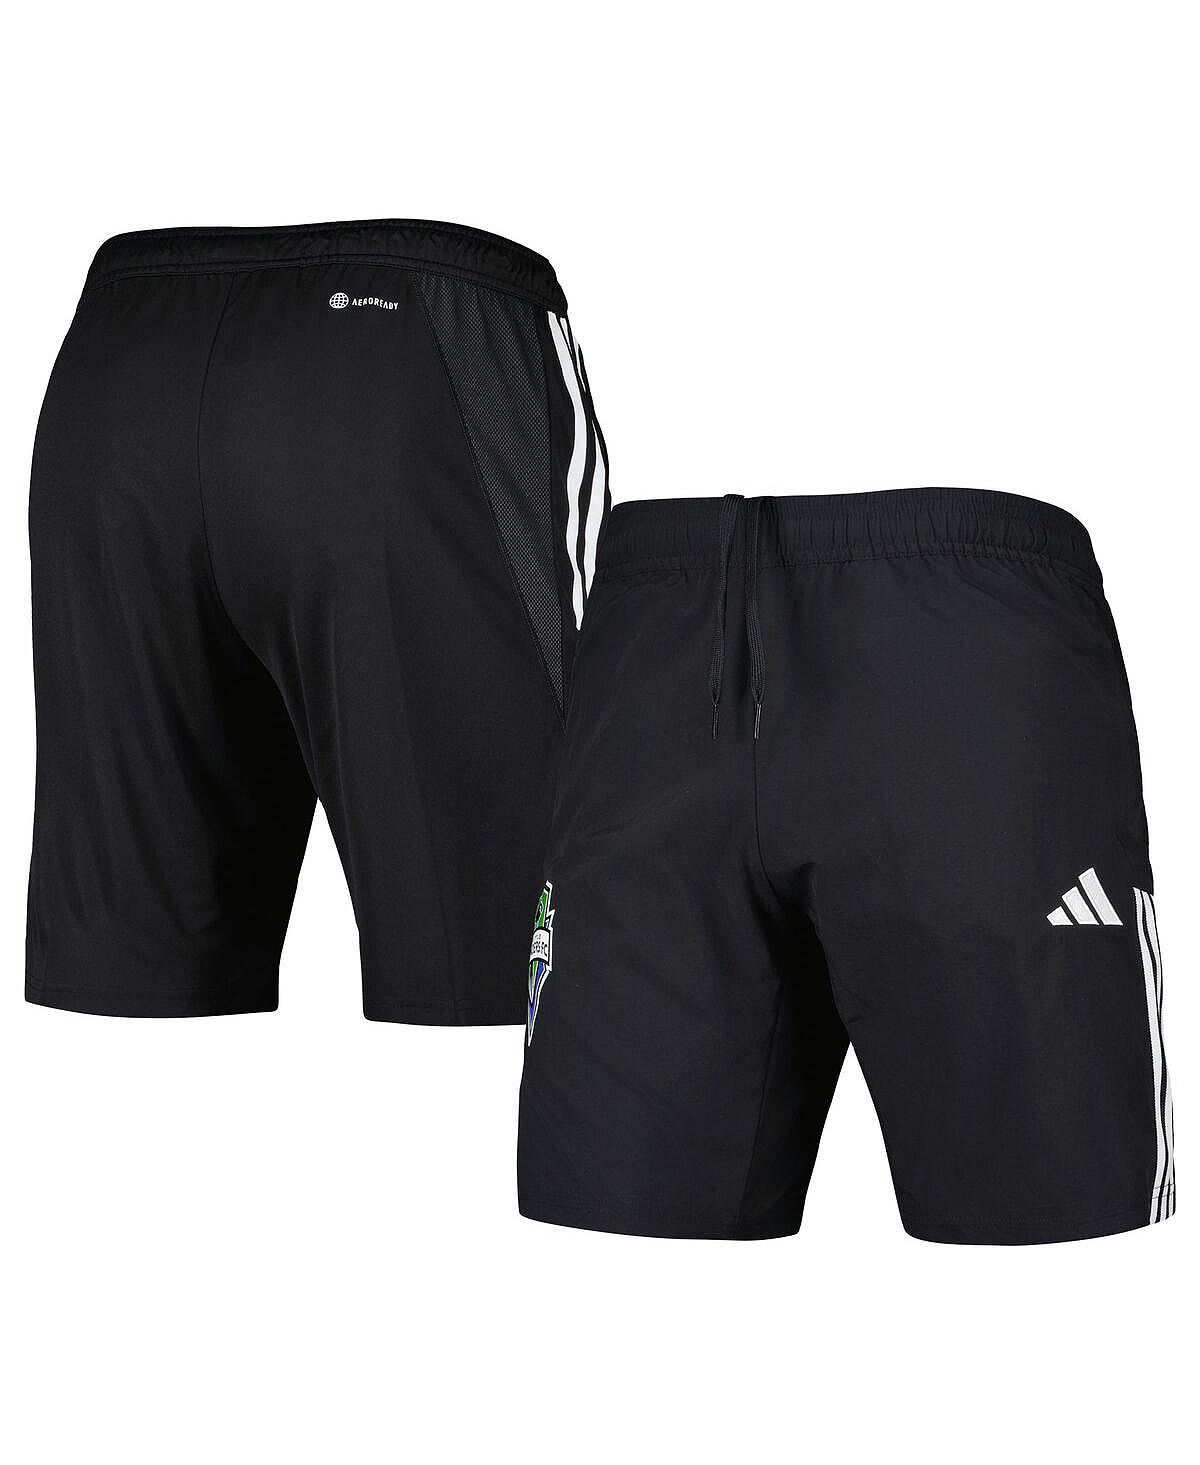 Мужские черные шорты Downtime Seattle Sounders FC adidas